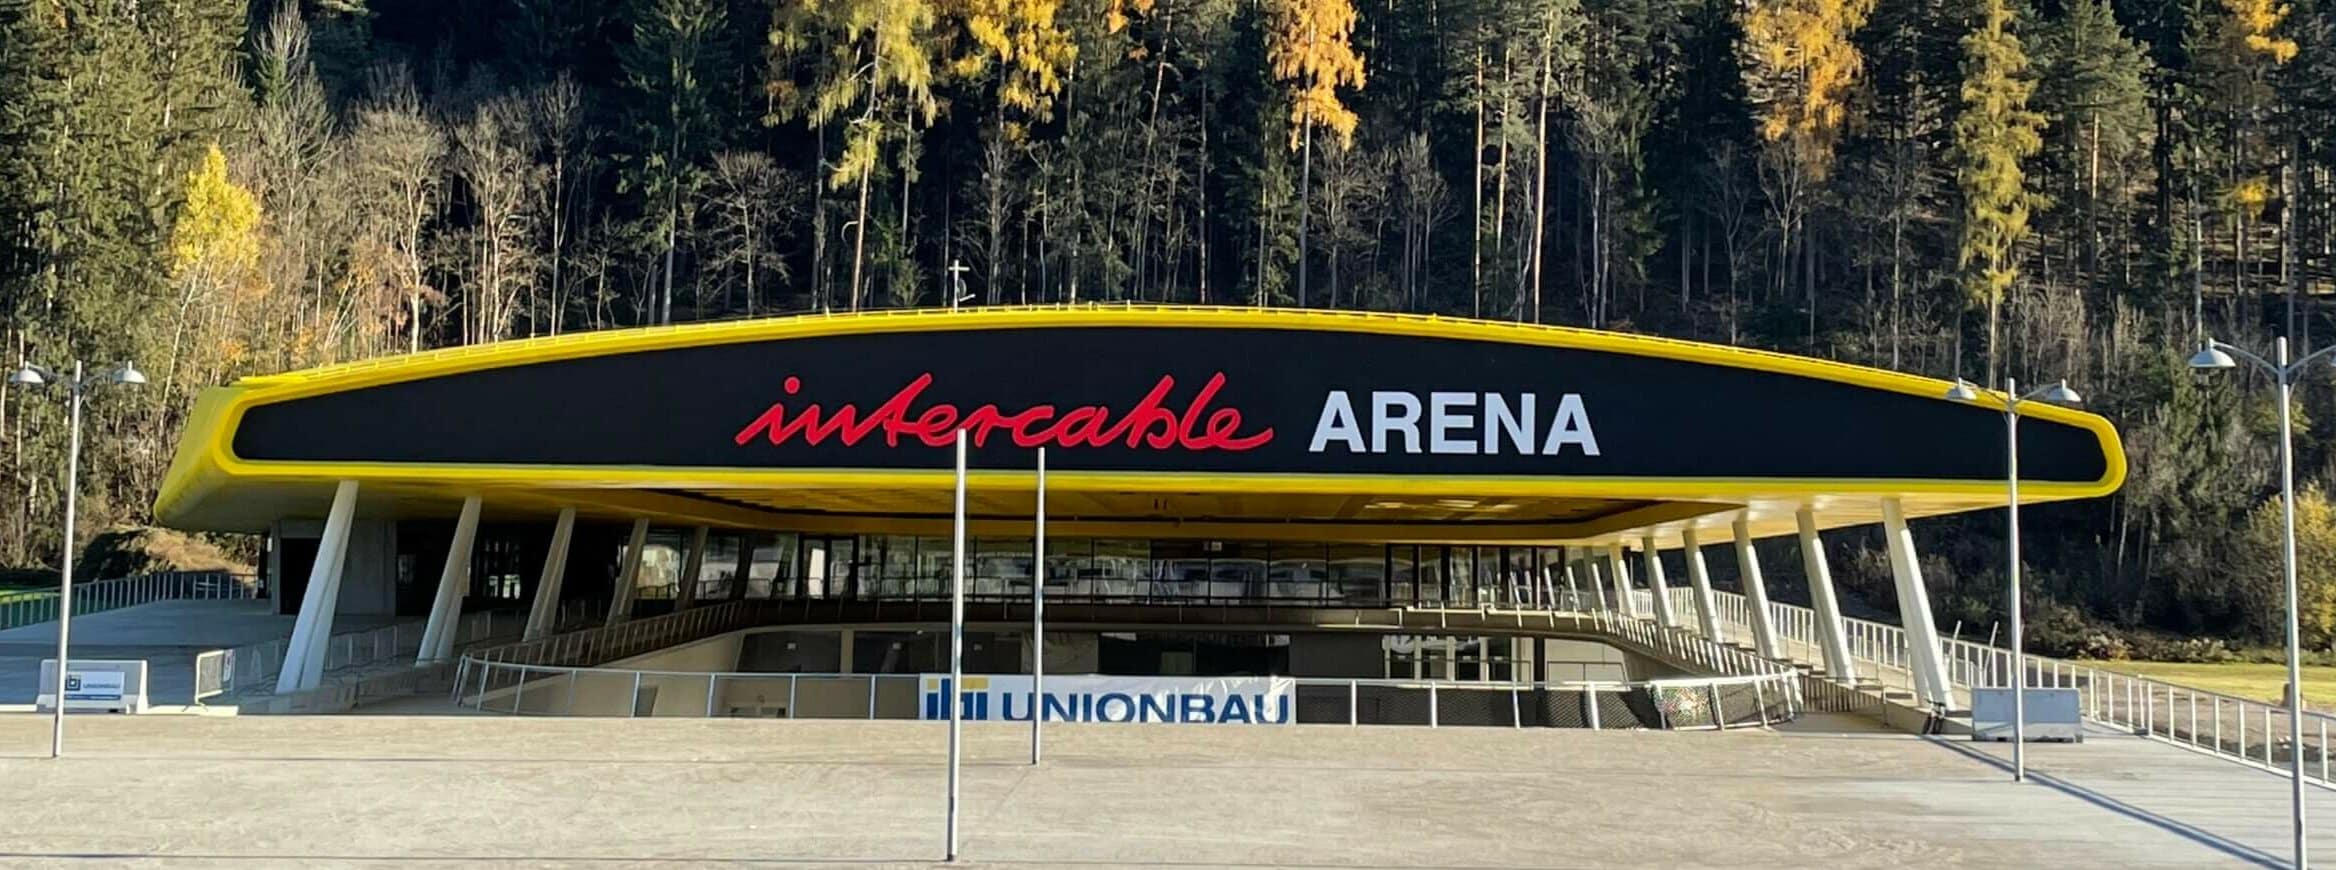 Intercable Arena – Brunico, Trentino Alto Adige(IT)